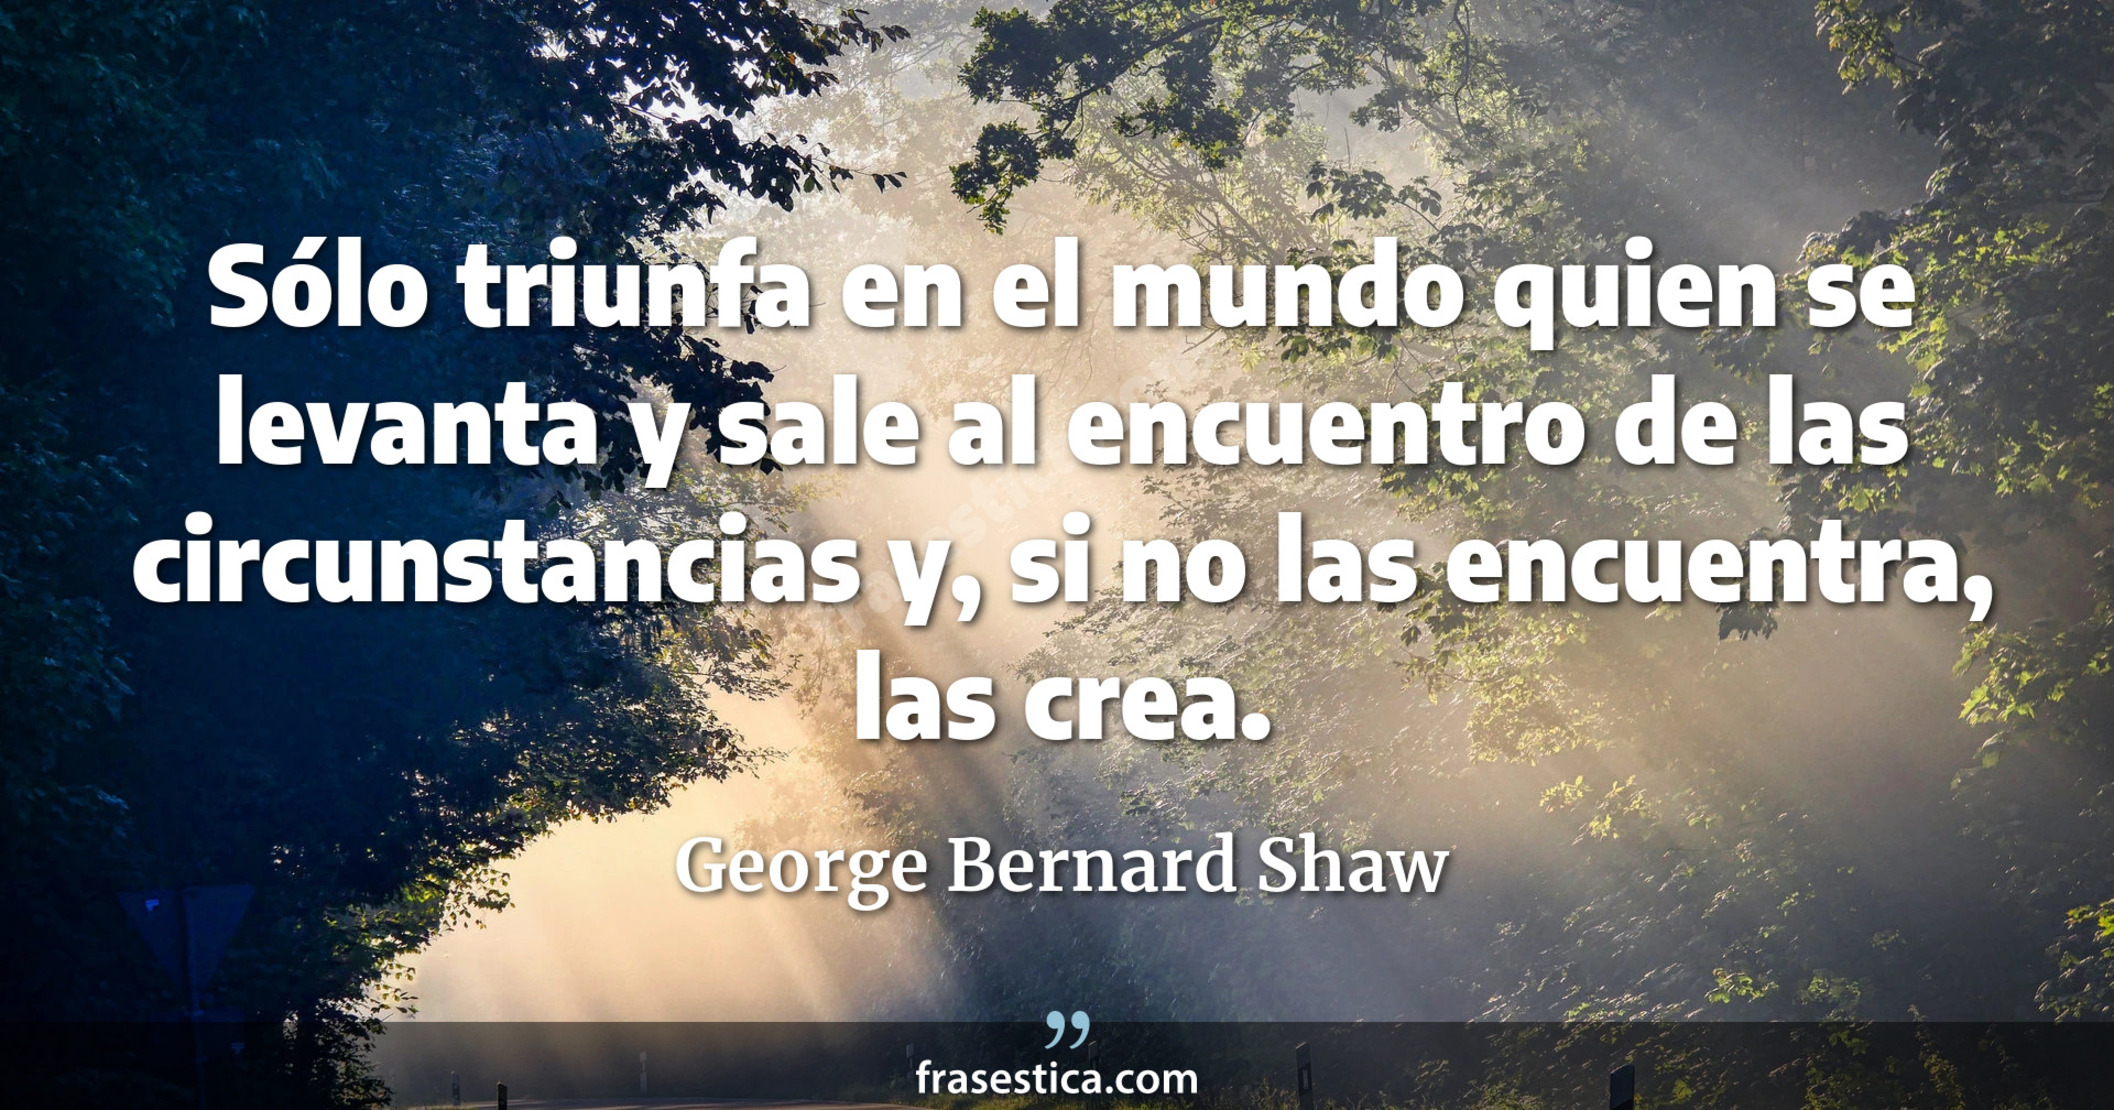 Sólo triunfa en el mundo quien se levanta y sale al encuentro de las circunstancias y, si no las encuentra, las crea. - George Bernard Shaw